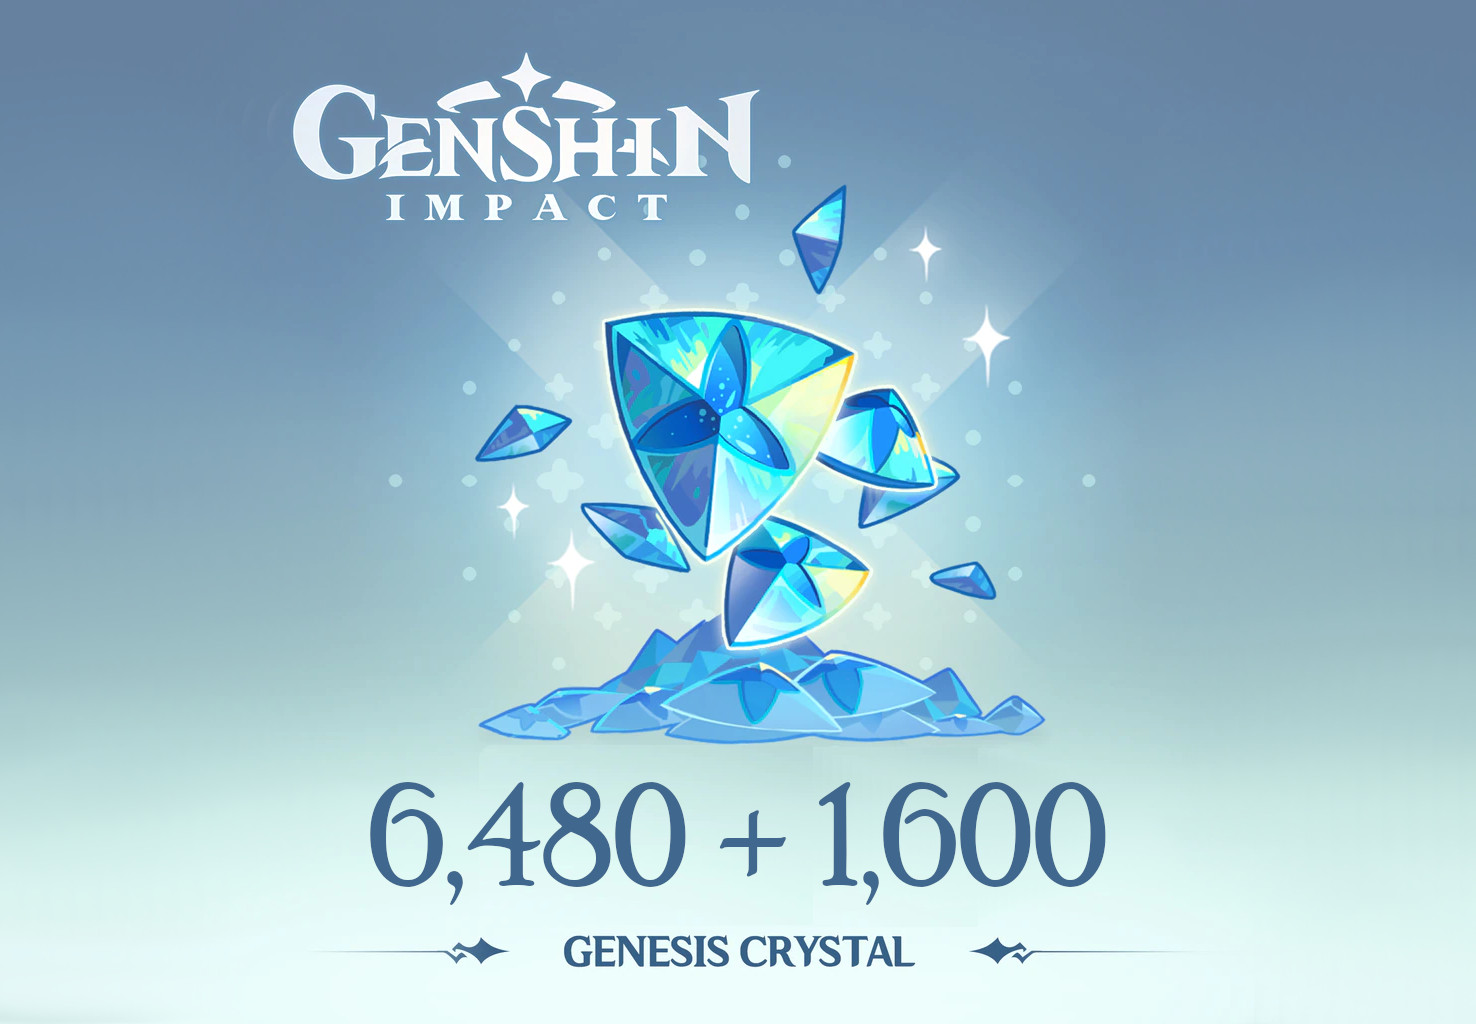 [$ 107.29] Genshin Impact - 6,480 + 1,600 Genesis Crystals Reidos Voucher